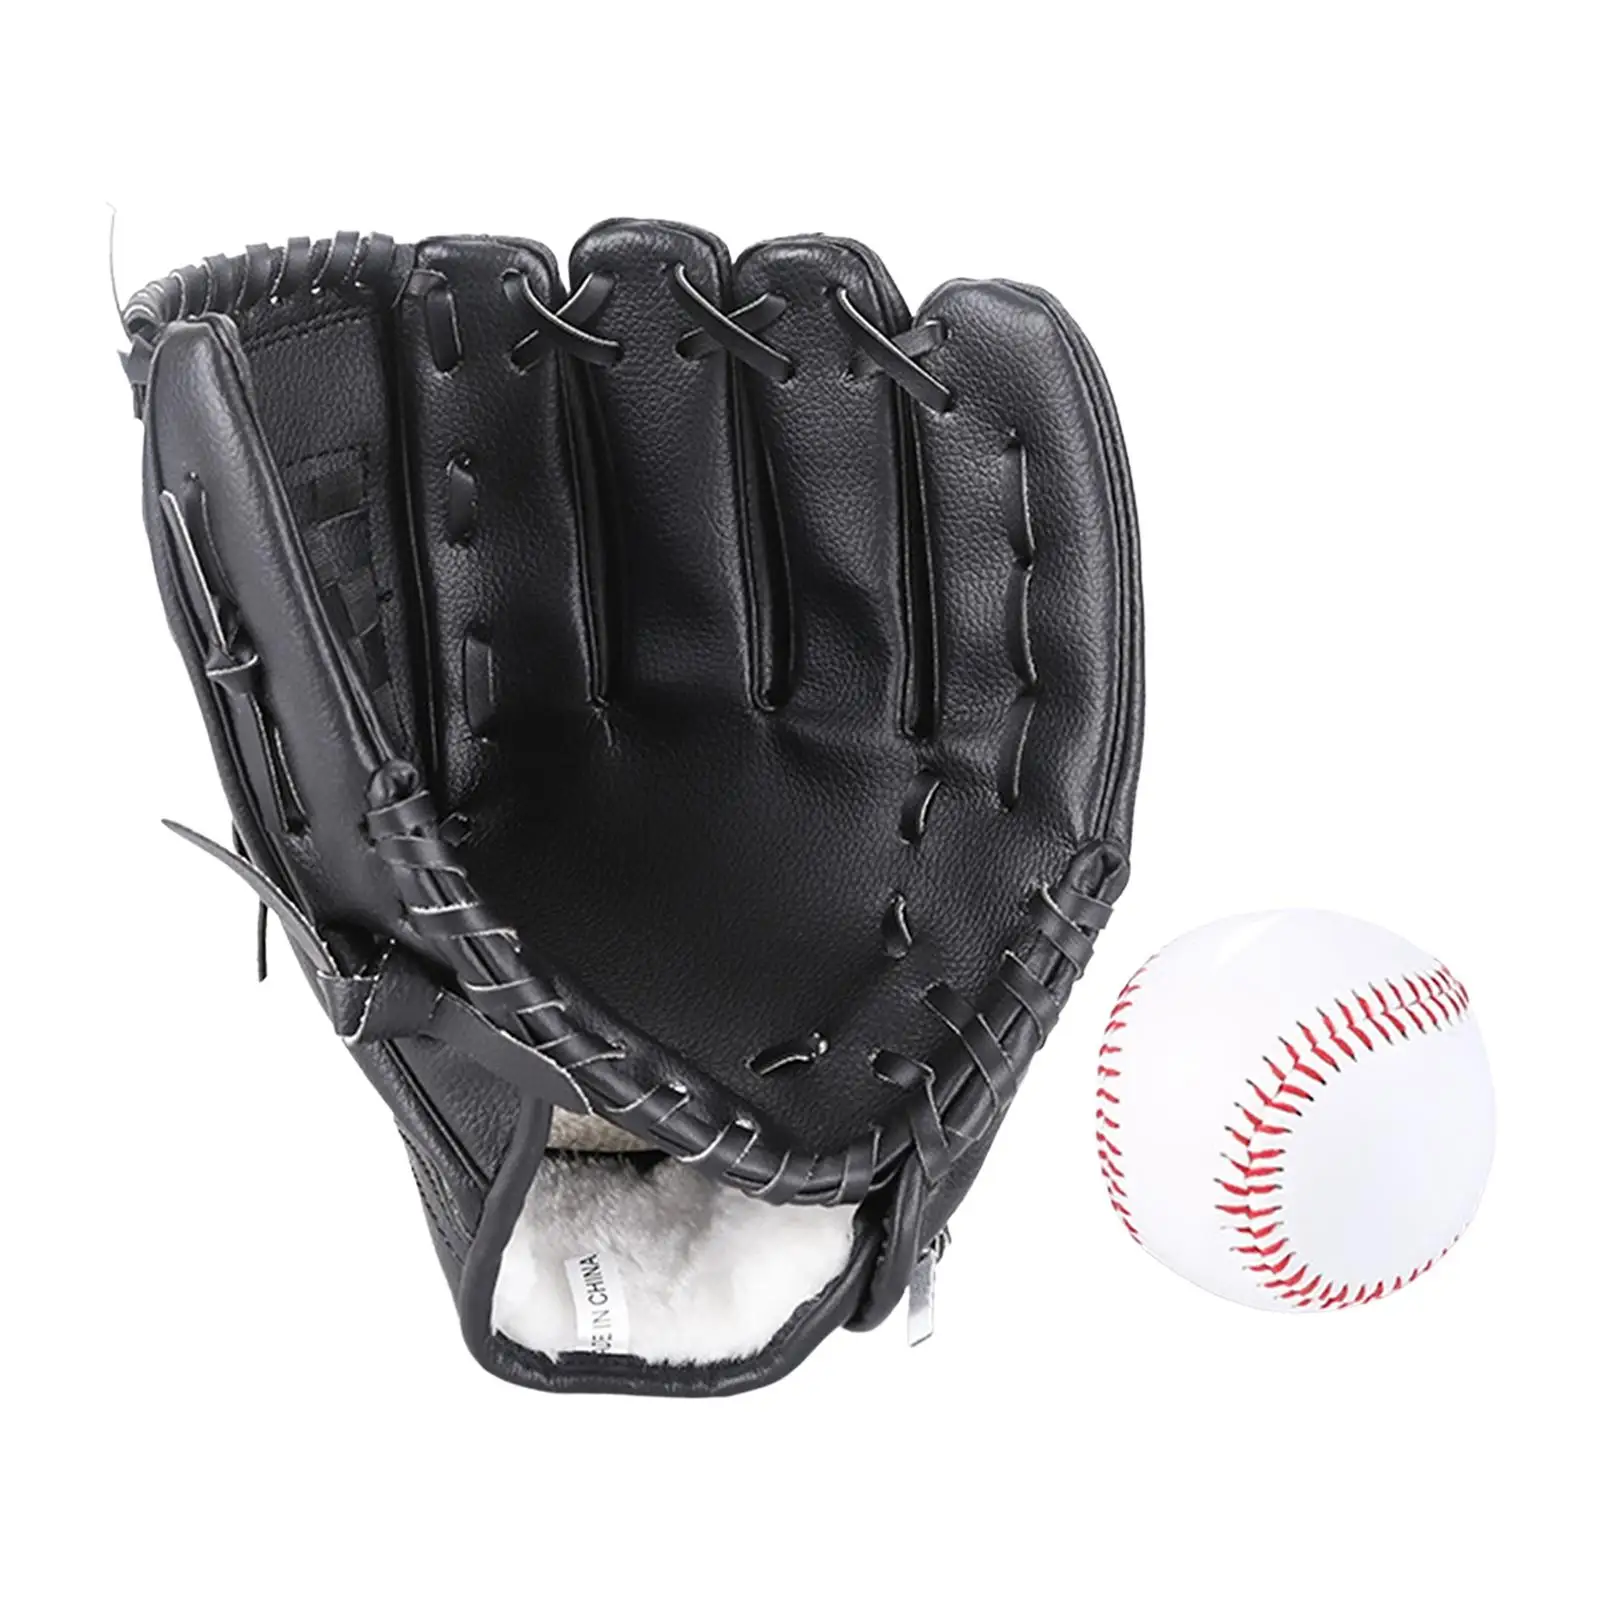 

Baseball Fielding Glove and Ball Softball Mitt Lightweight Accessories Left Hand Glove Reinforced for Pitcher Beginner Training